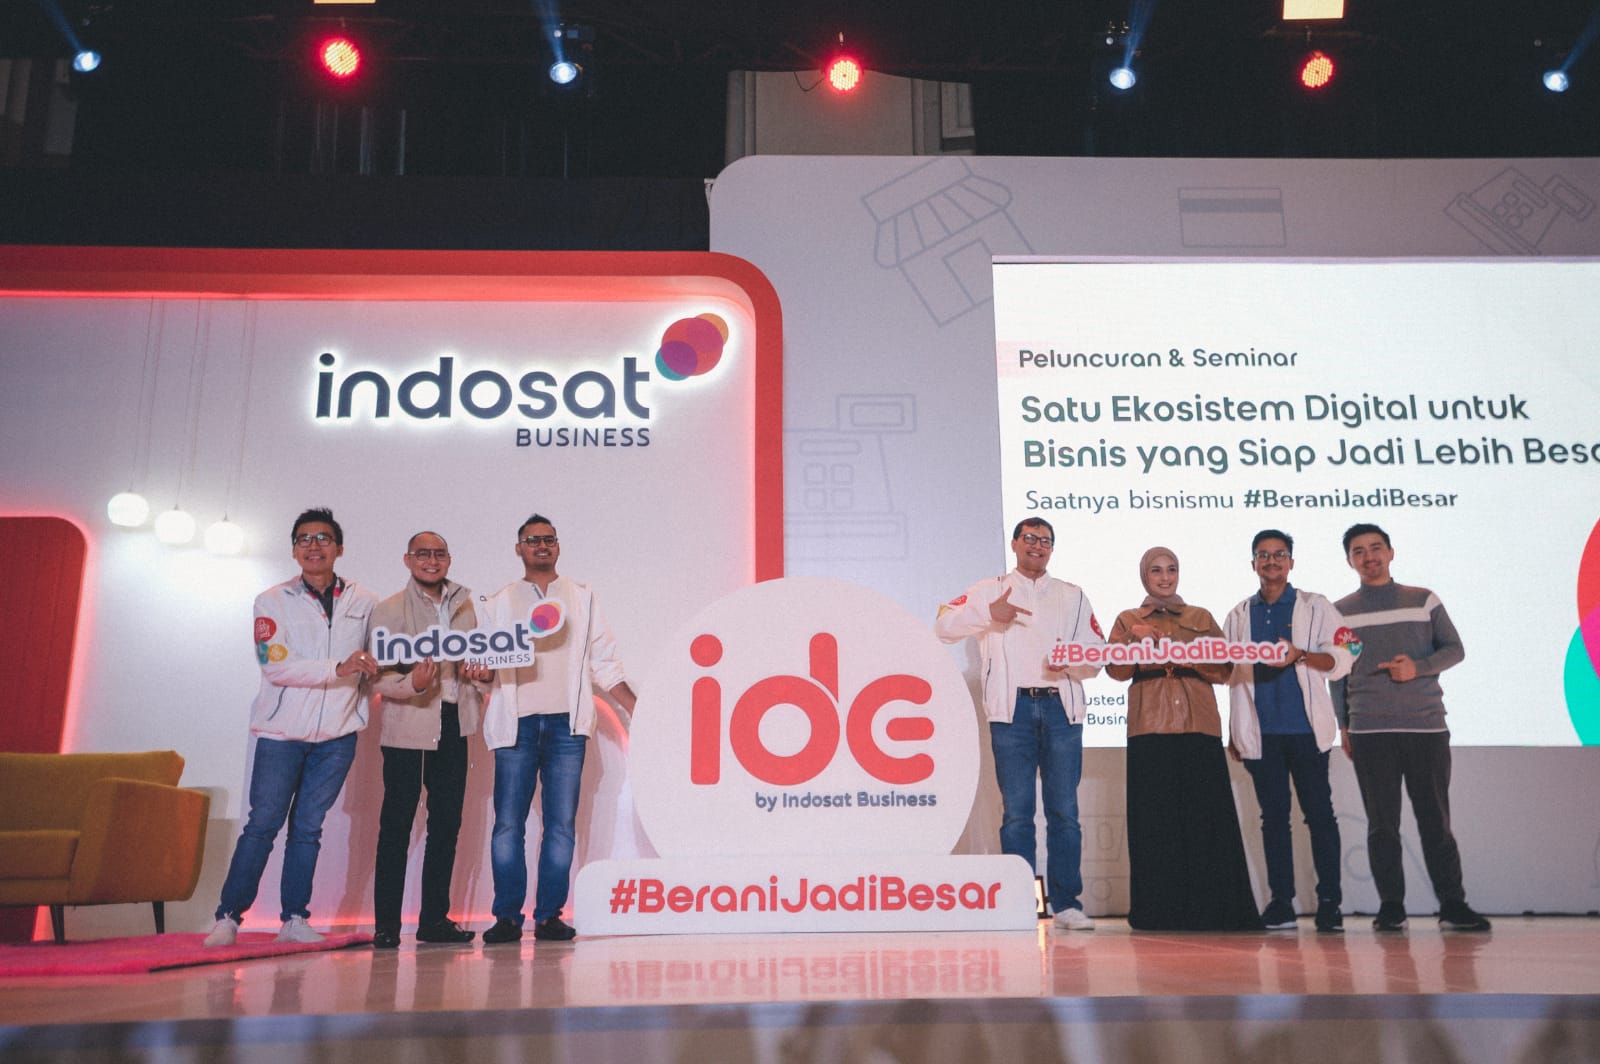 Dorong UMKM Indonesia Bertransformasi dan Berani Jadi Besar